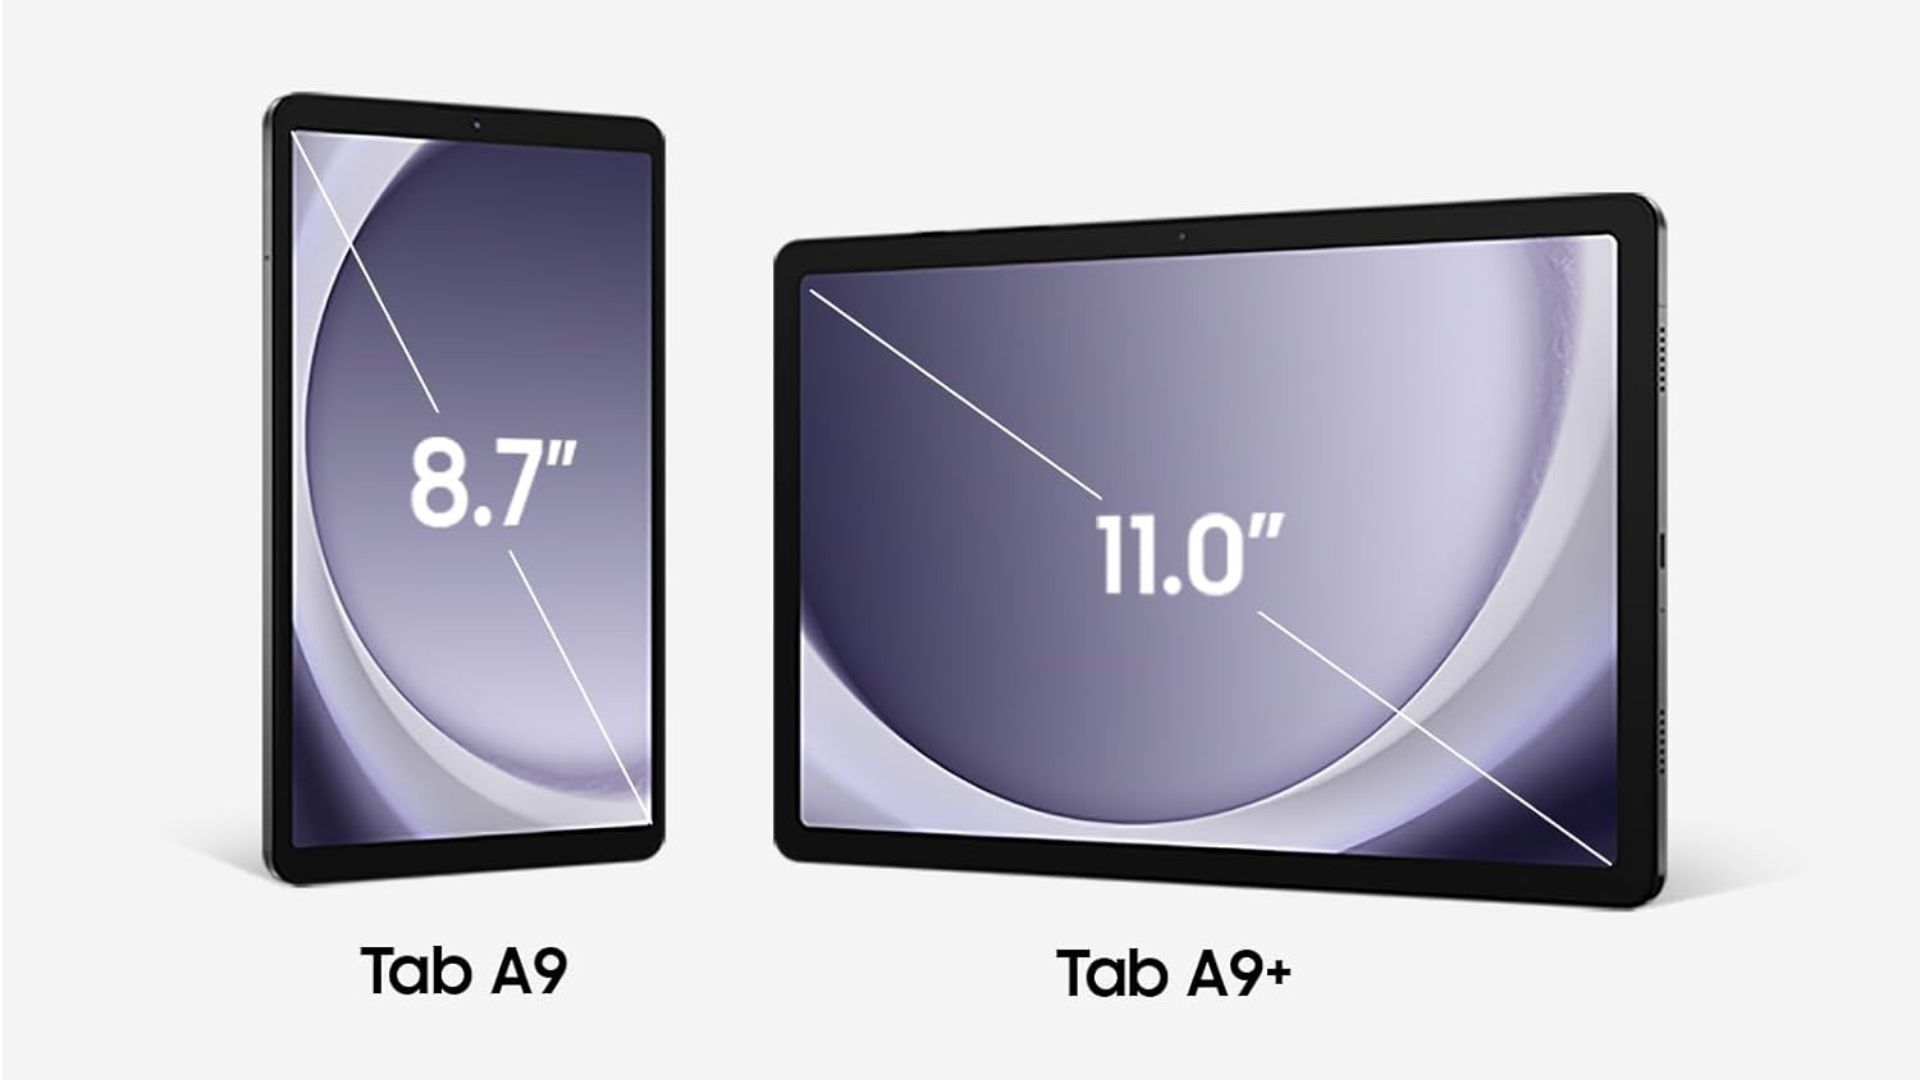 Samsung Galaxy Tab A9 and Galaxy Tab A9+